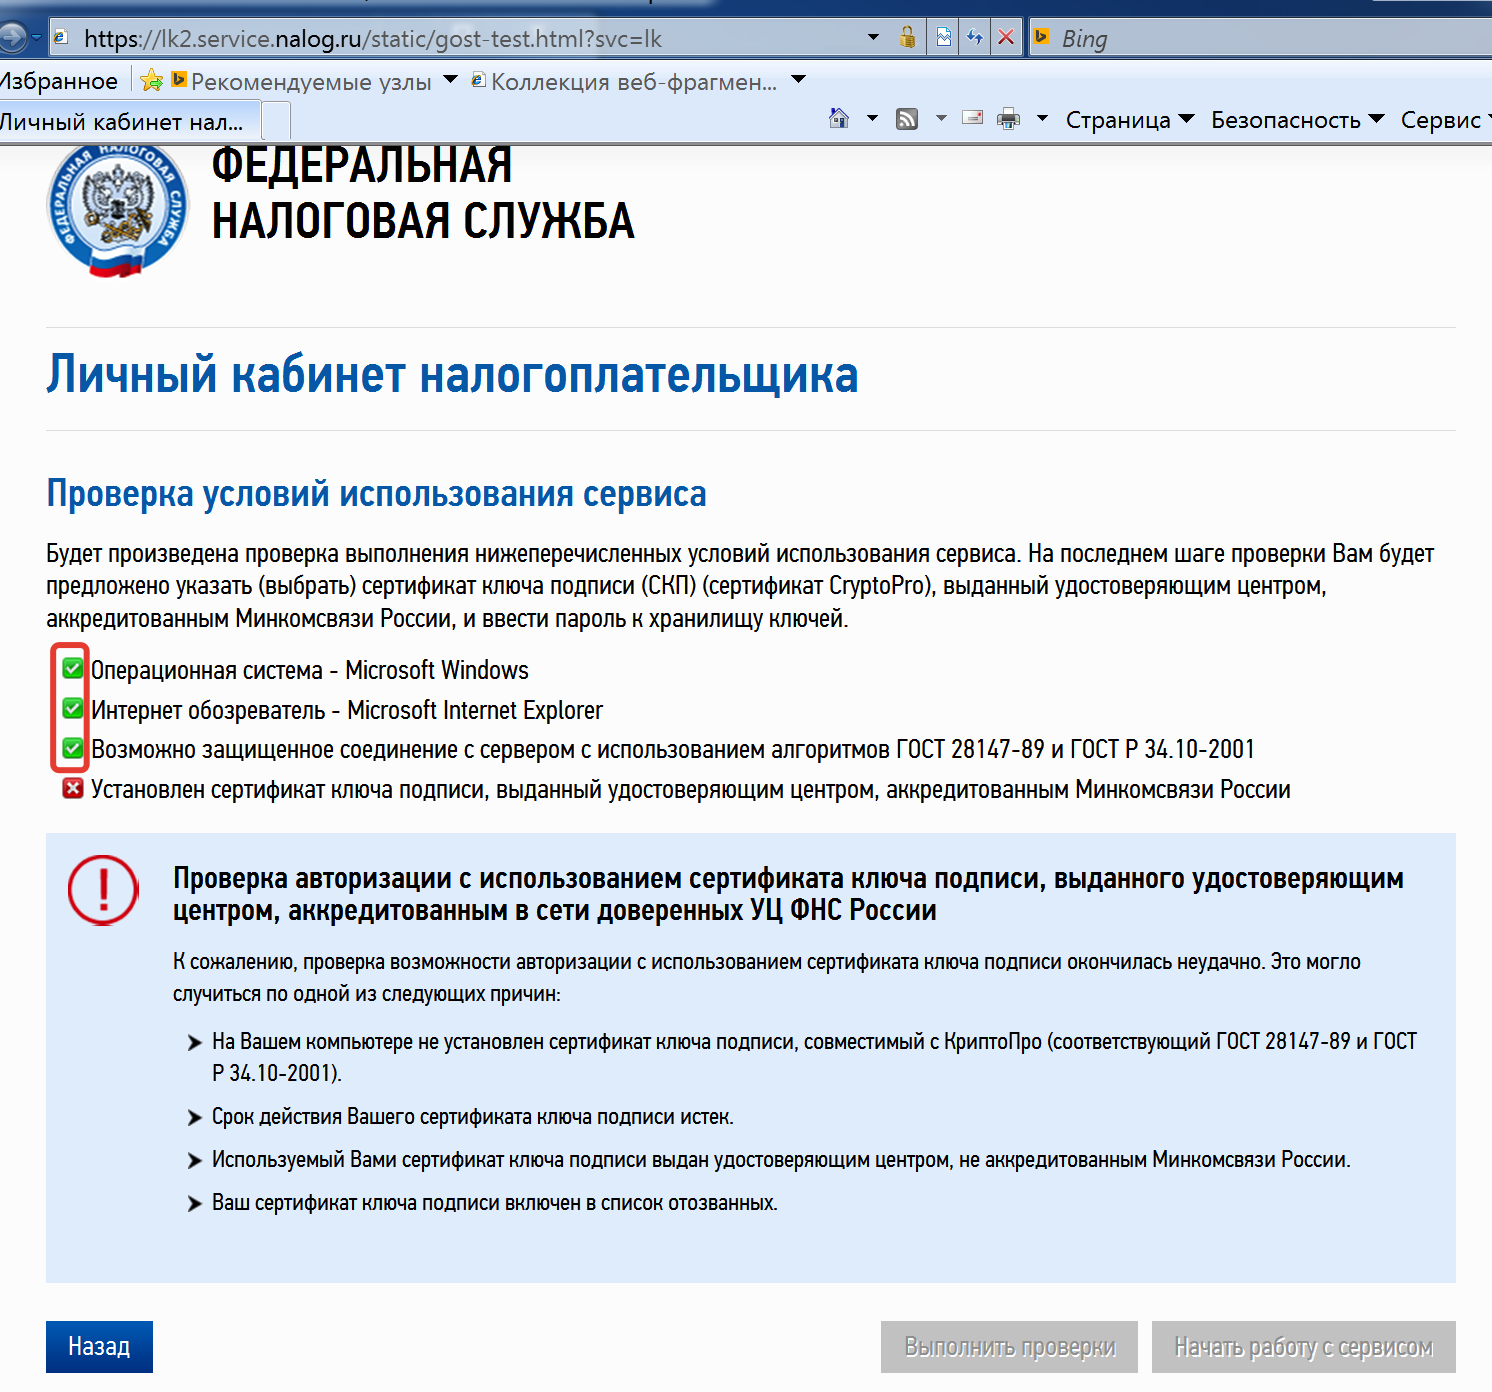 Как сдать налоговую декларацию за 2013 год электронным способом за несколько дней (РФ)